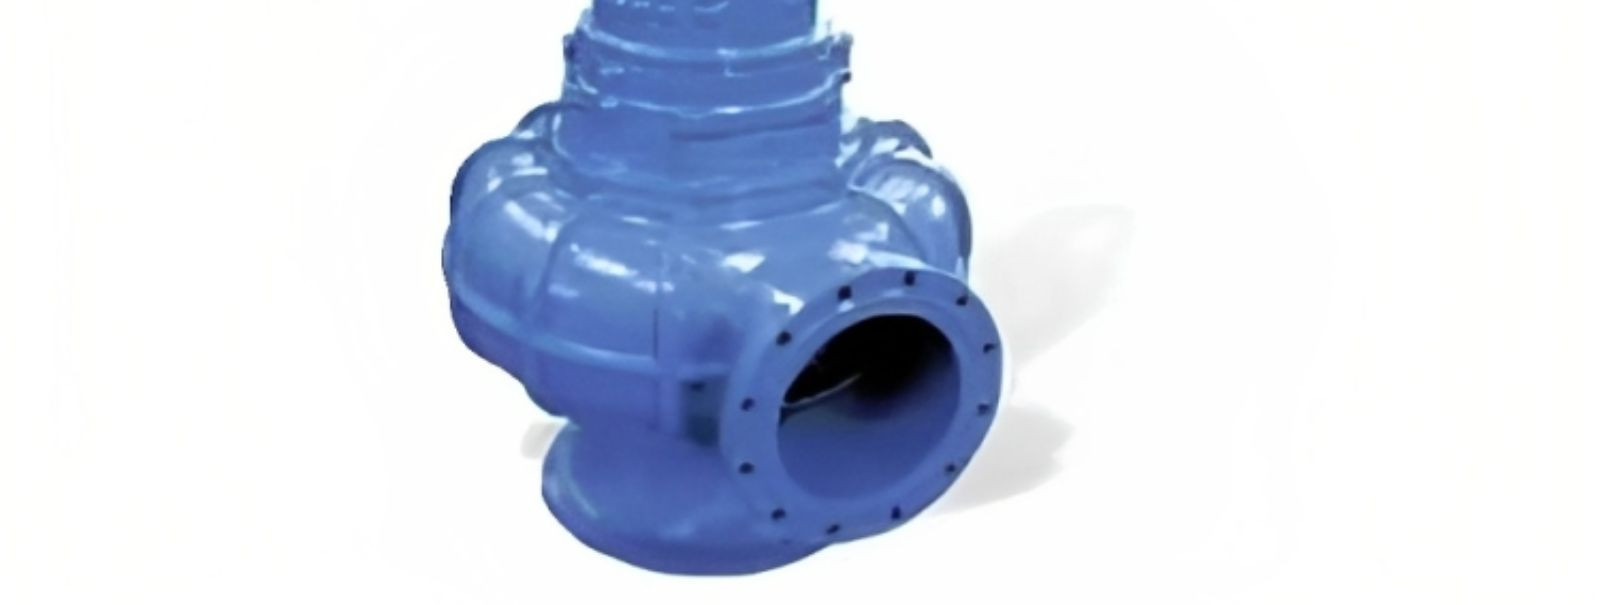 Heitvee ja drenaažipumbad on seadmed, mida kasutatakse vedelike tõstmiseks ja äravooluks, tavaliselt vee puhastamiseks. Kuigi erinevad tüübid võivad pisut erine